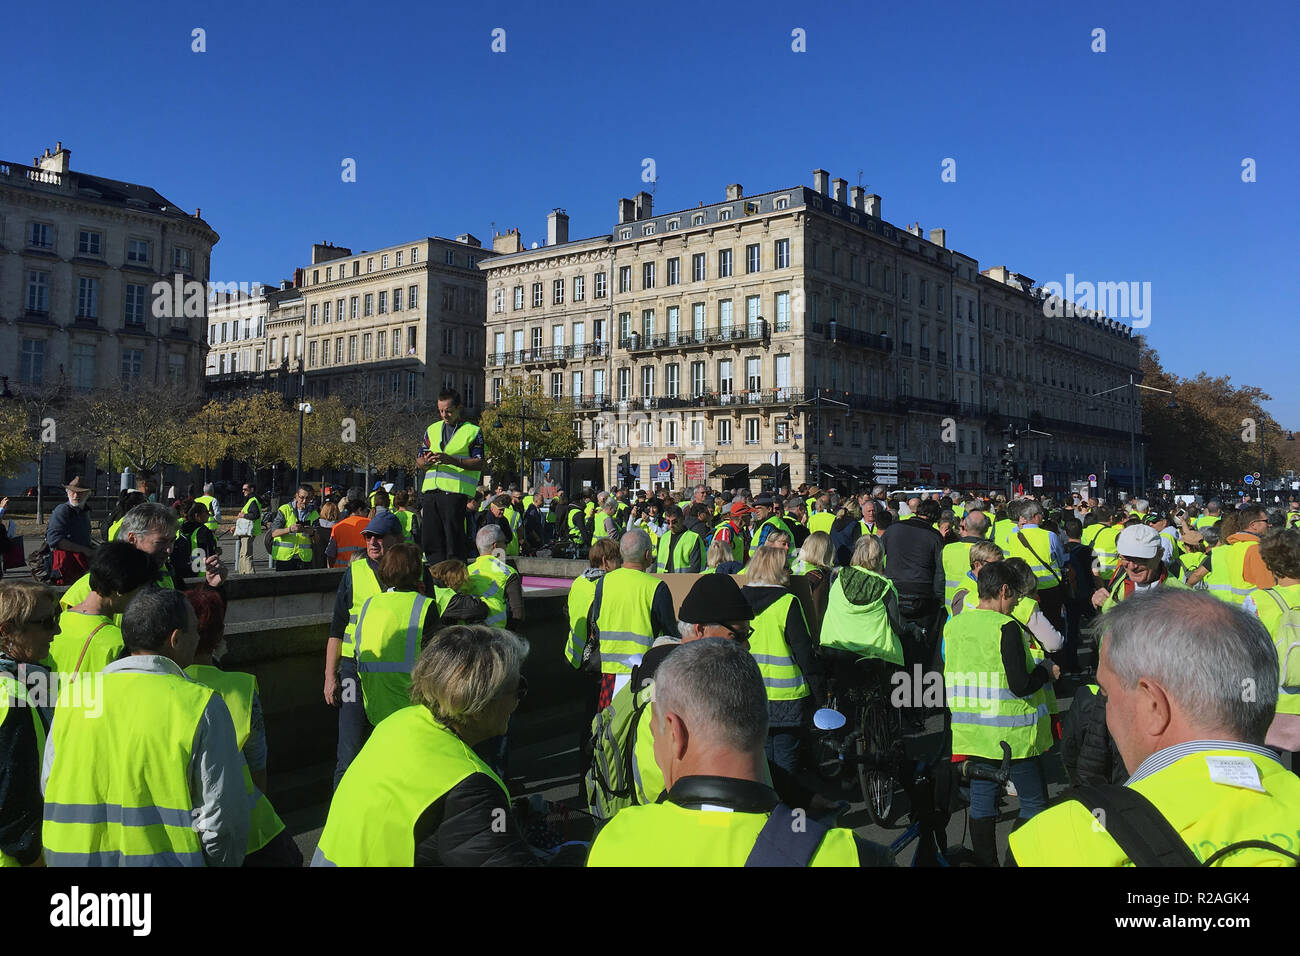 Burdeos, Francia - 17 de noviembre de 2018: manifestación chalecos amarillos en contra de aumentar los impuestos sobre la gasolina y el diesel presentó el Gobierno de Francia: Crédito sportpoint/Alamy Live News Foto de stock